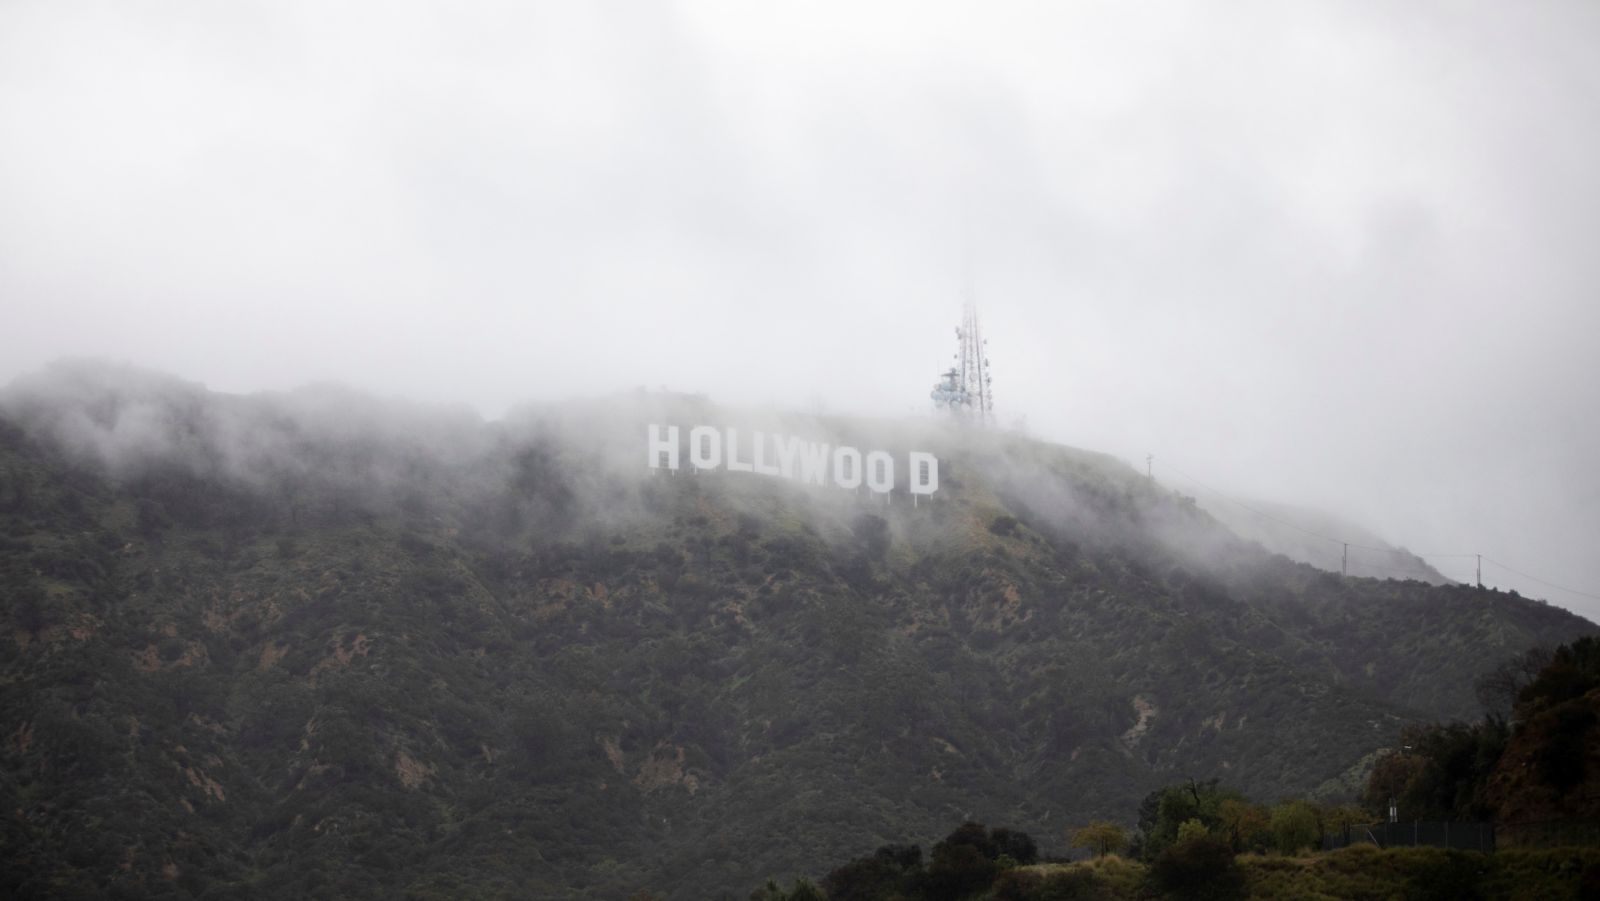 El letrero de Hollywood a través de una mezcla de niebla y polvo de nieve durante una rara tormenta de invierno en Los Ángeles, California, el 24 de febrero de 2023.